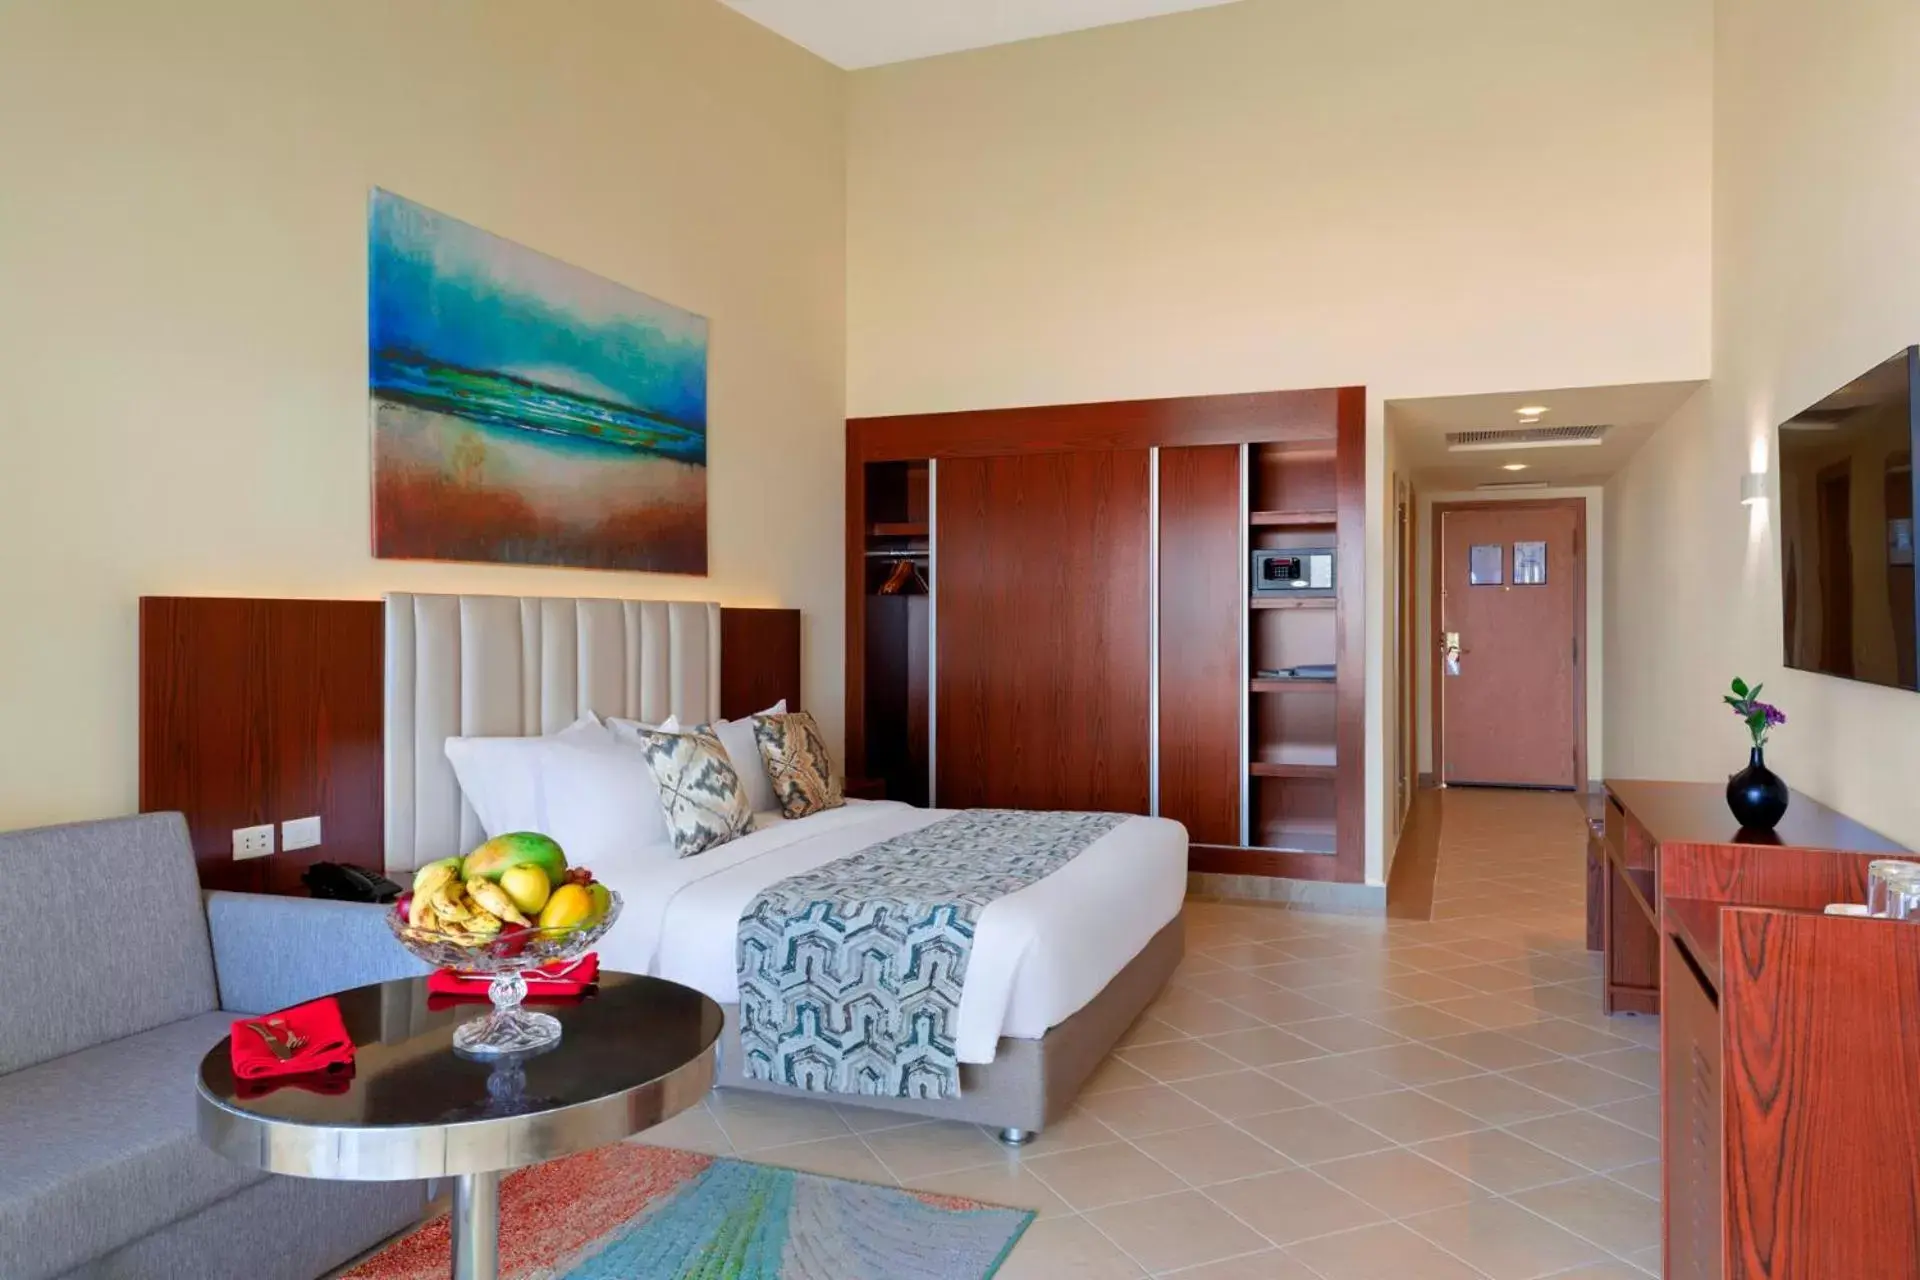 Bedroom in Pickalbatros Dana Beach Resort - Hurghada